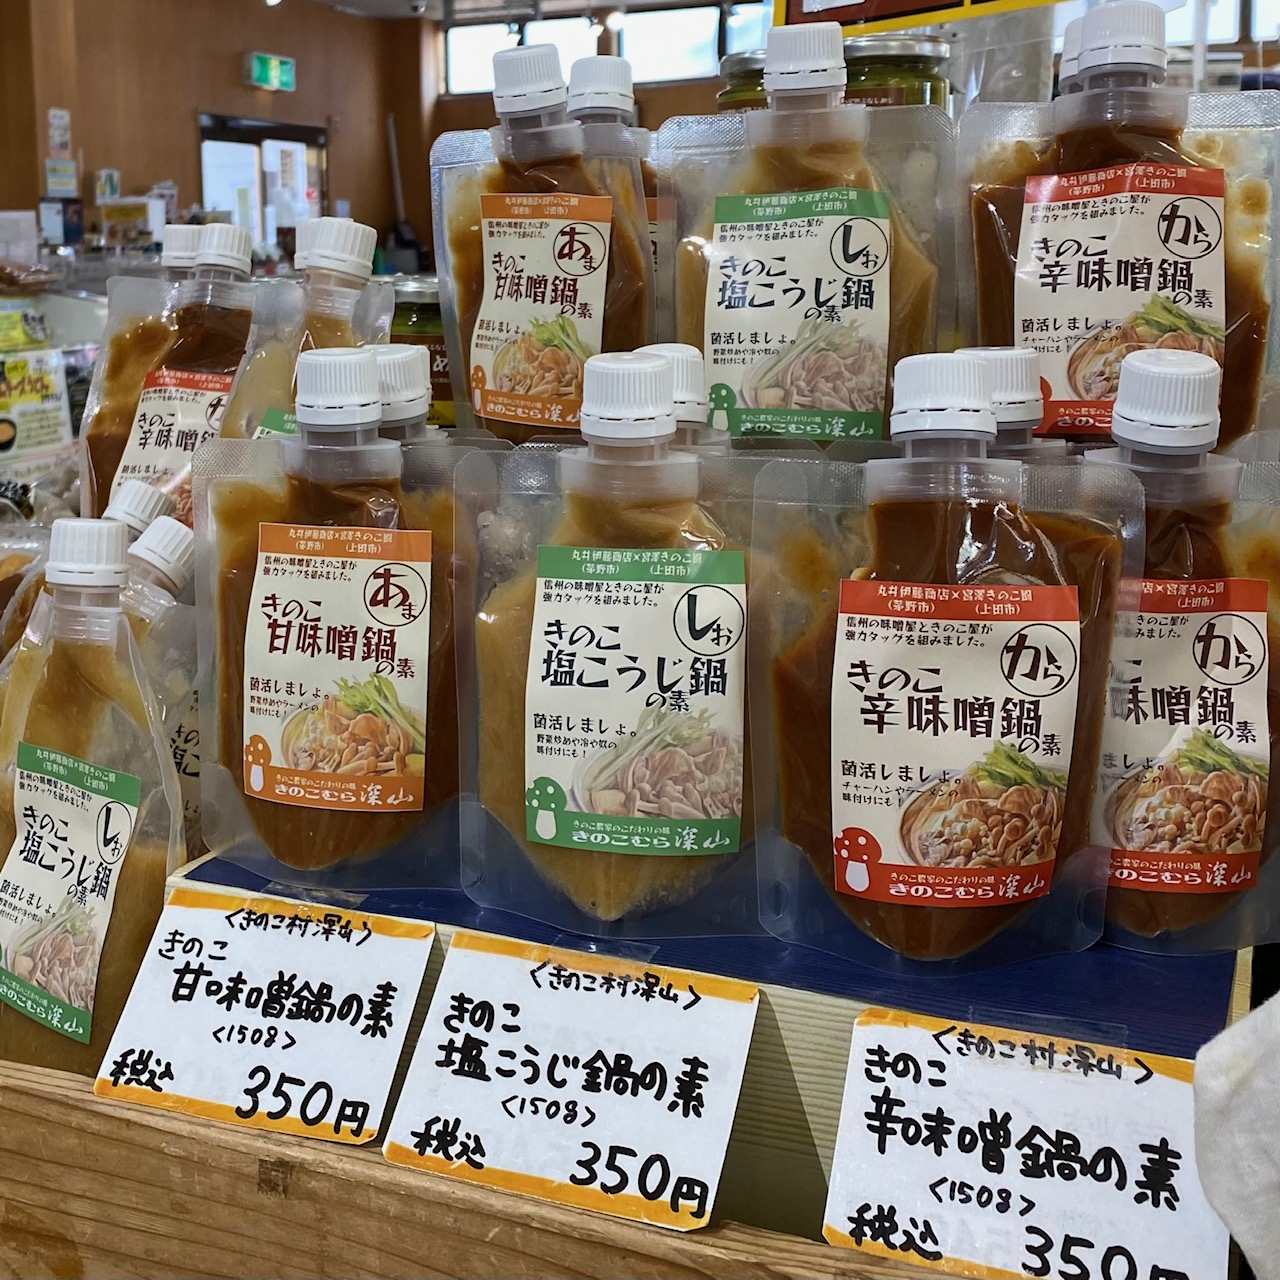 長野県長和町「おみやげ処・菜の花館」様で、深山特製「辛子しめじ」と「きのこ鍋の素」の販売開始です。